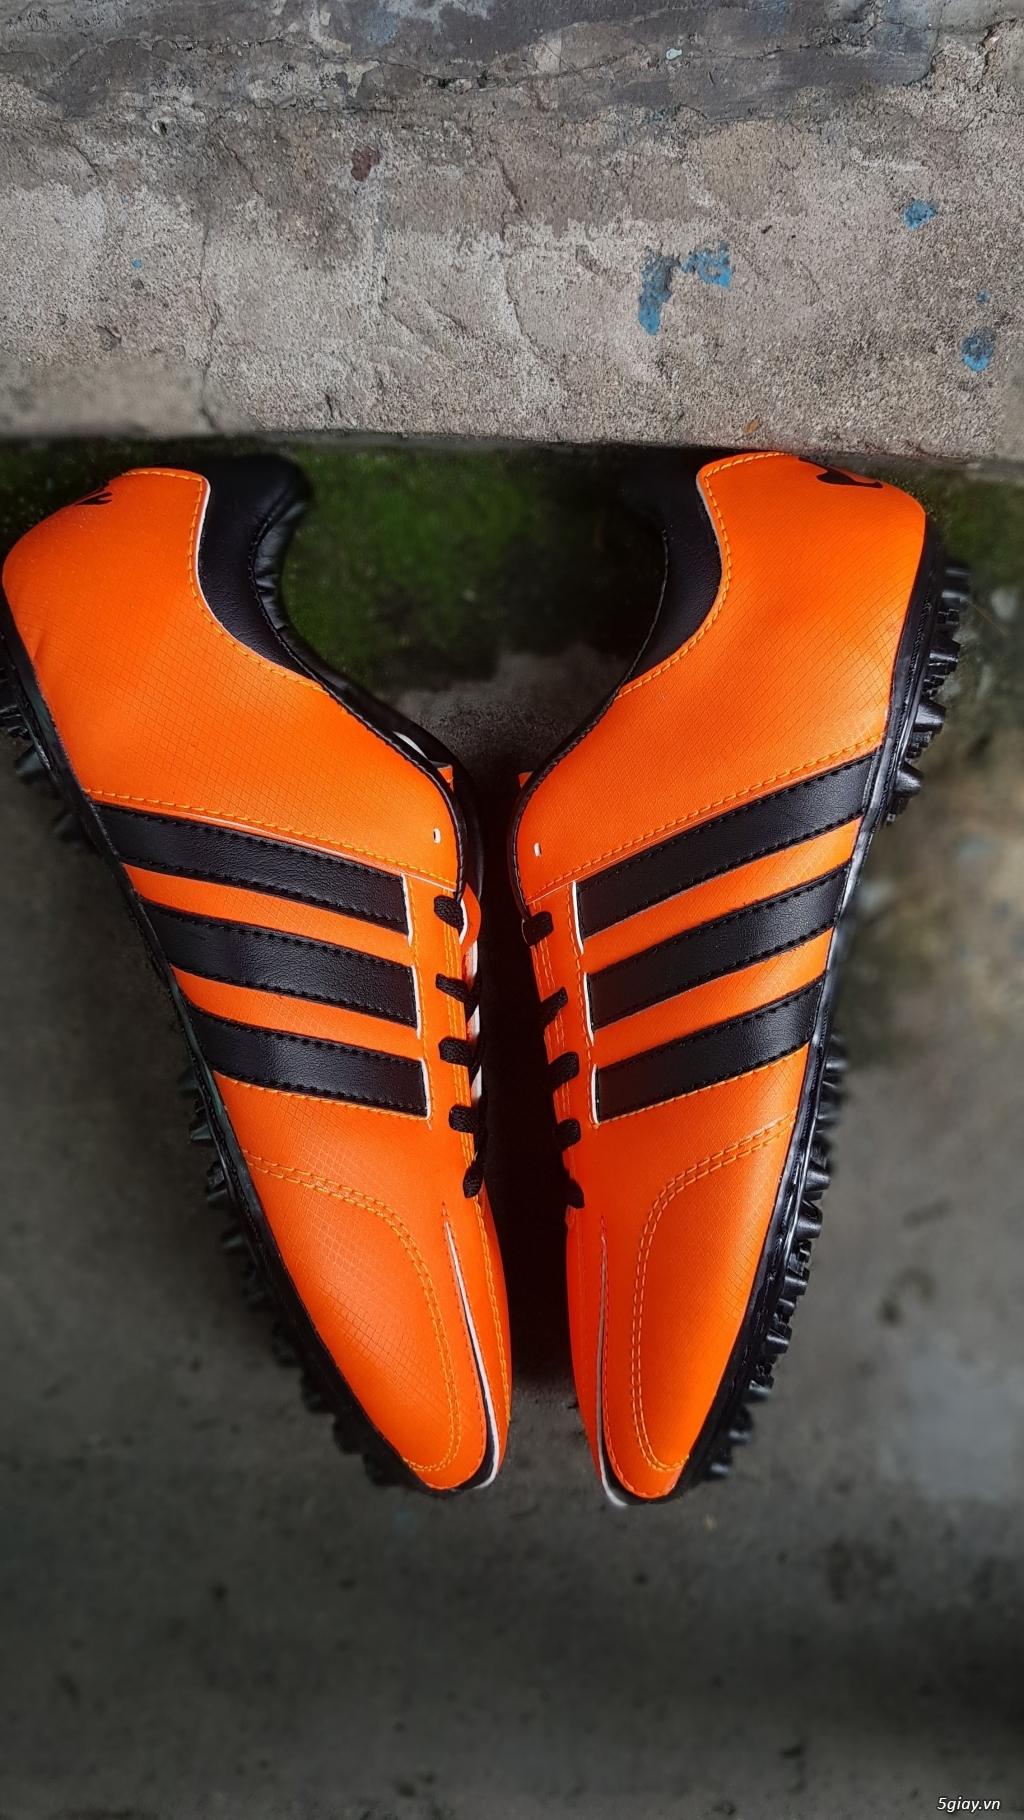 HIEU Sport - Giày đá banh sân cỏ nhân tạo các loại Nike, Adidas Adipure.... - 12